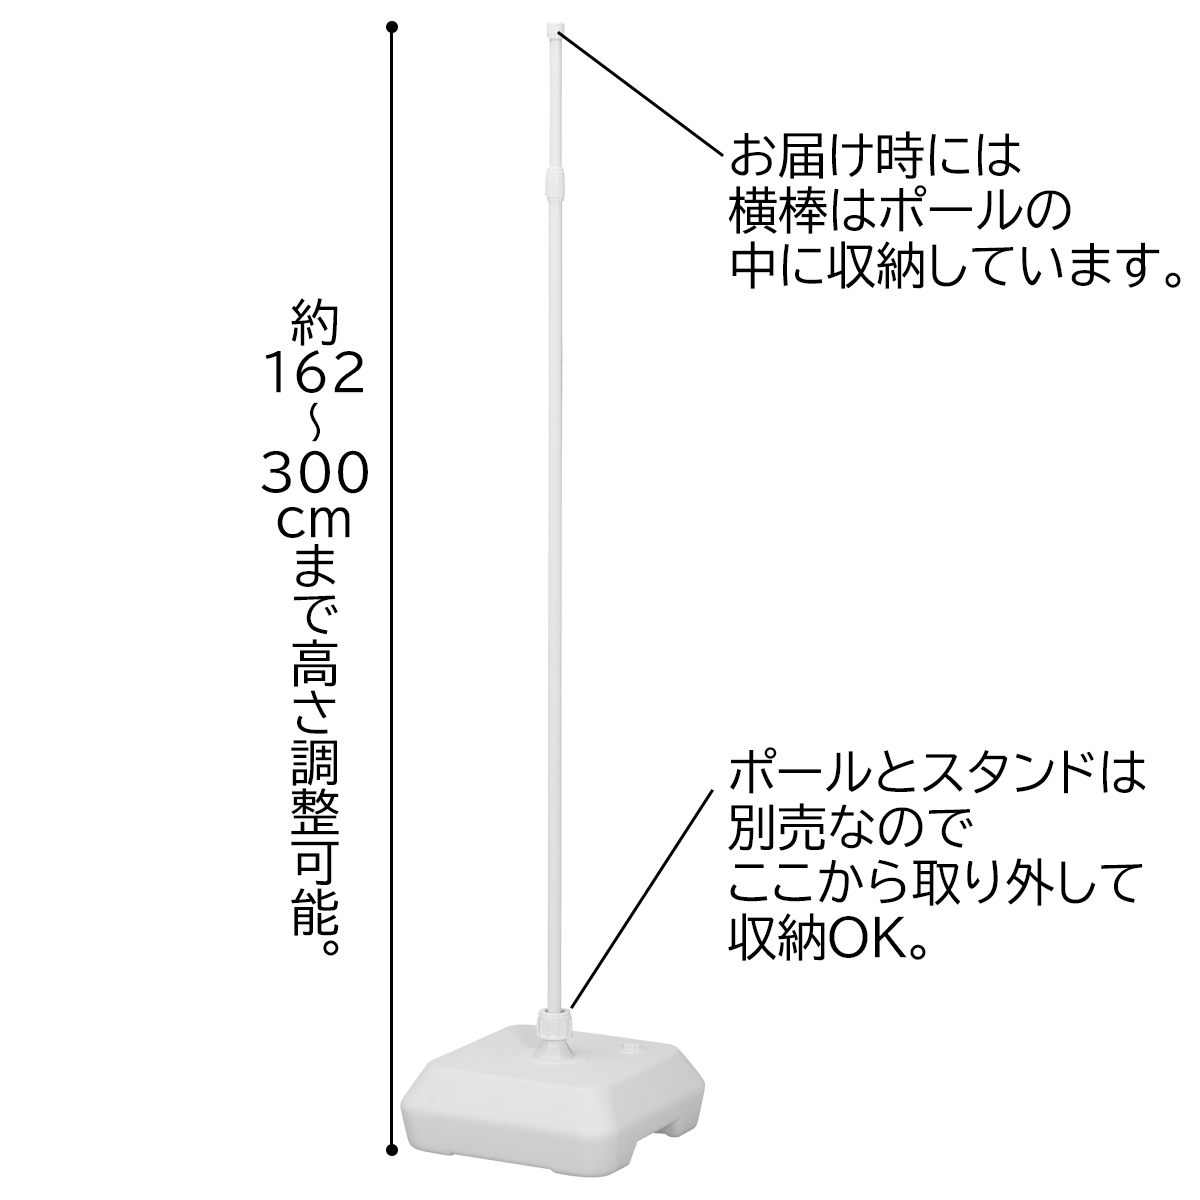 スチール製のぼり用ポール(3m伸縮式) 白 【通販】ストア・エキスプレス